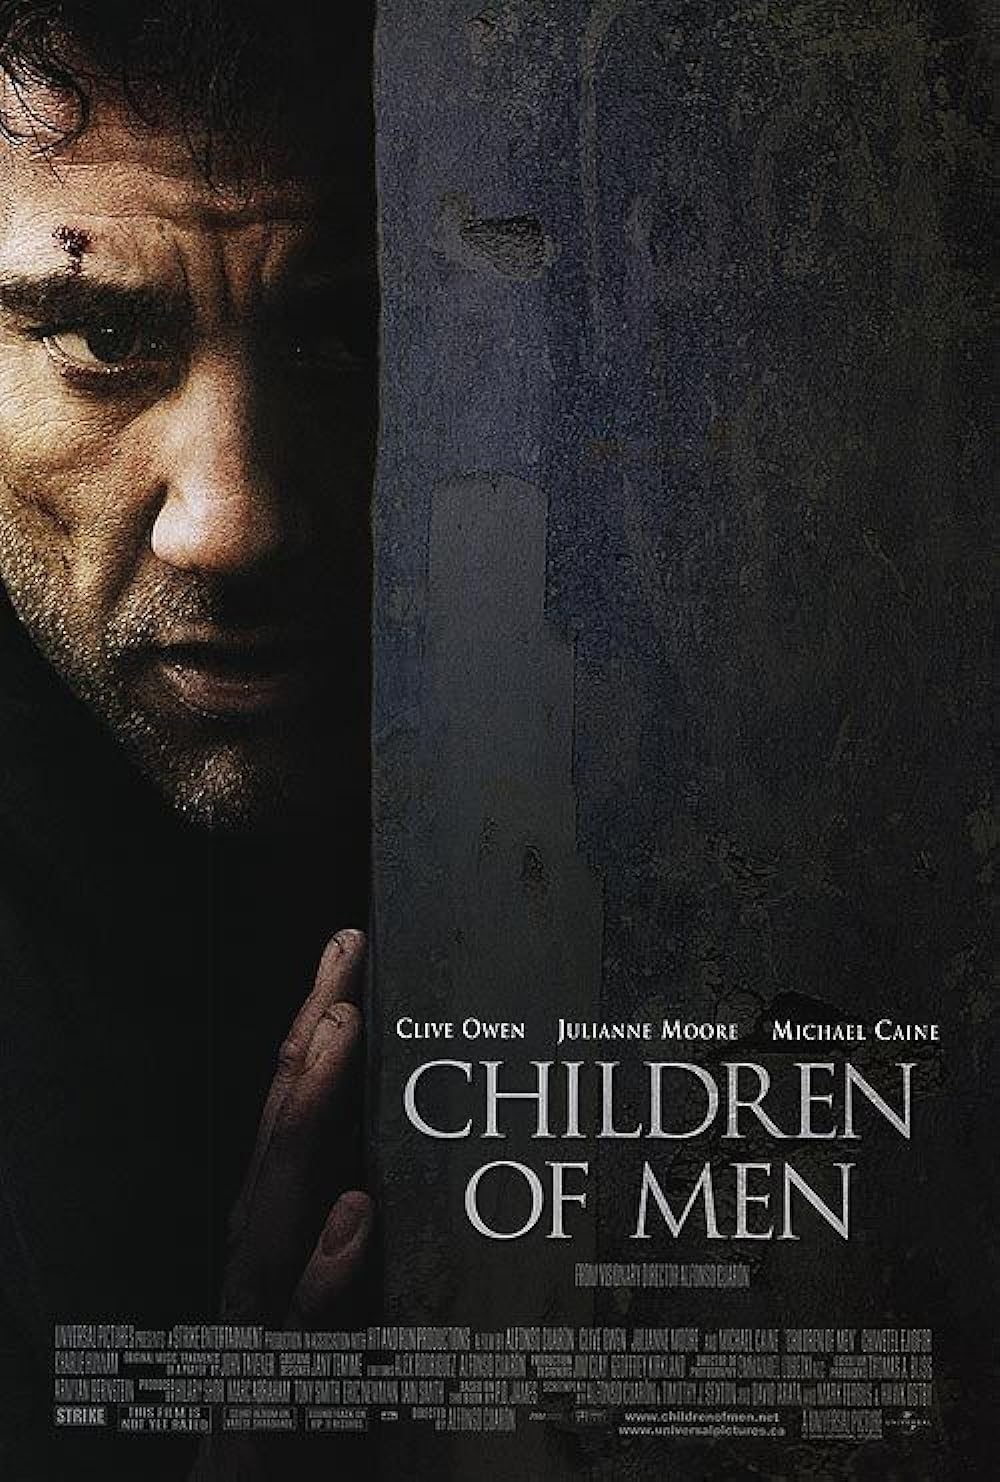 FULL MOVIE: Children of Men (2007)